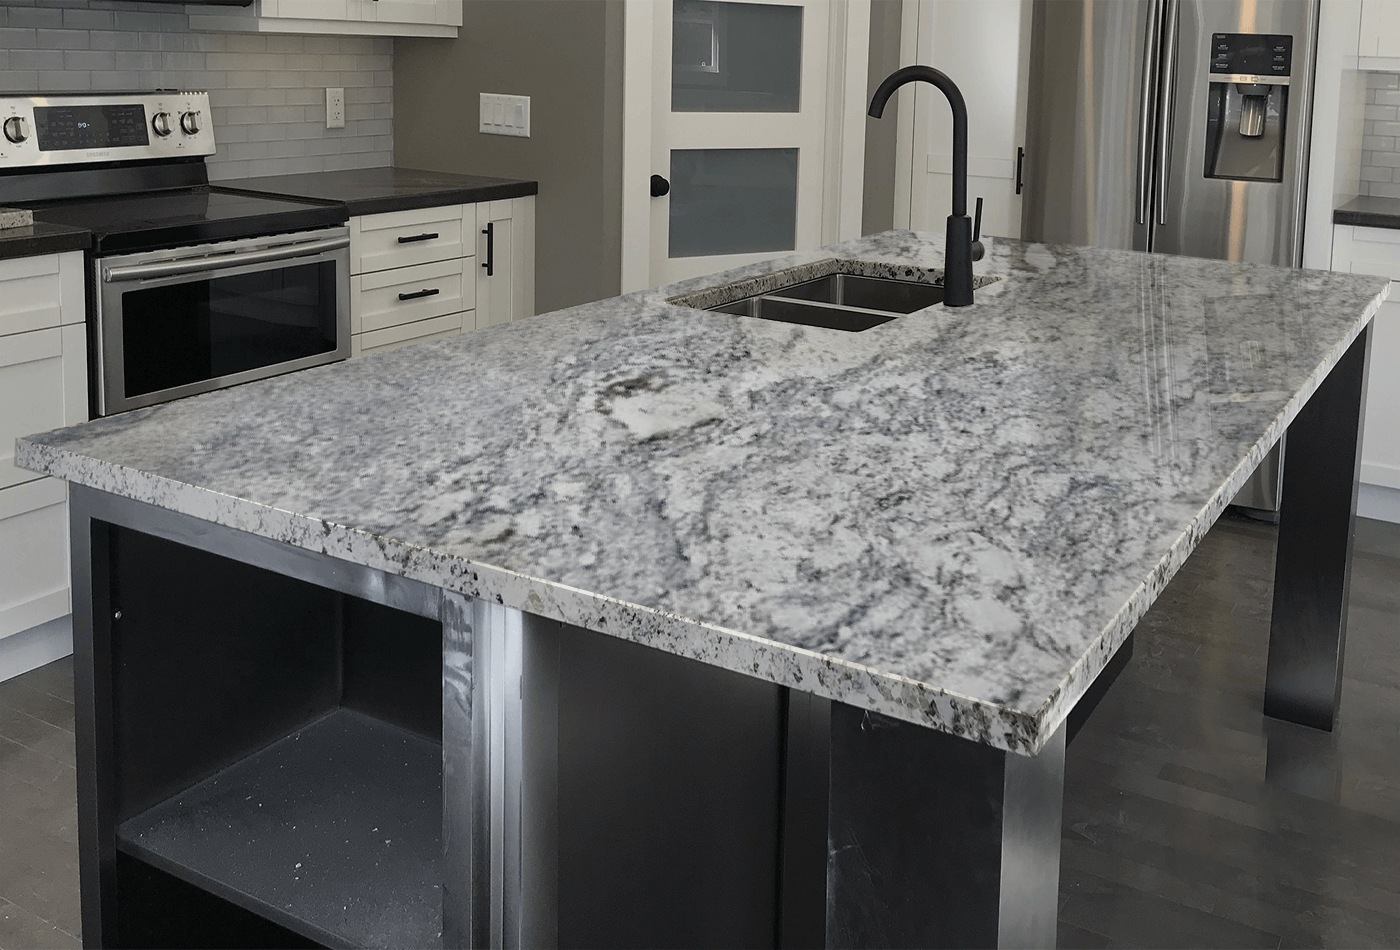 Nevaska White Granite - Stylish White Granite for Your Home